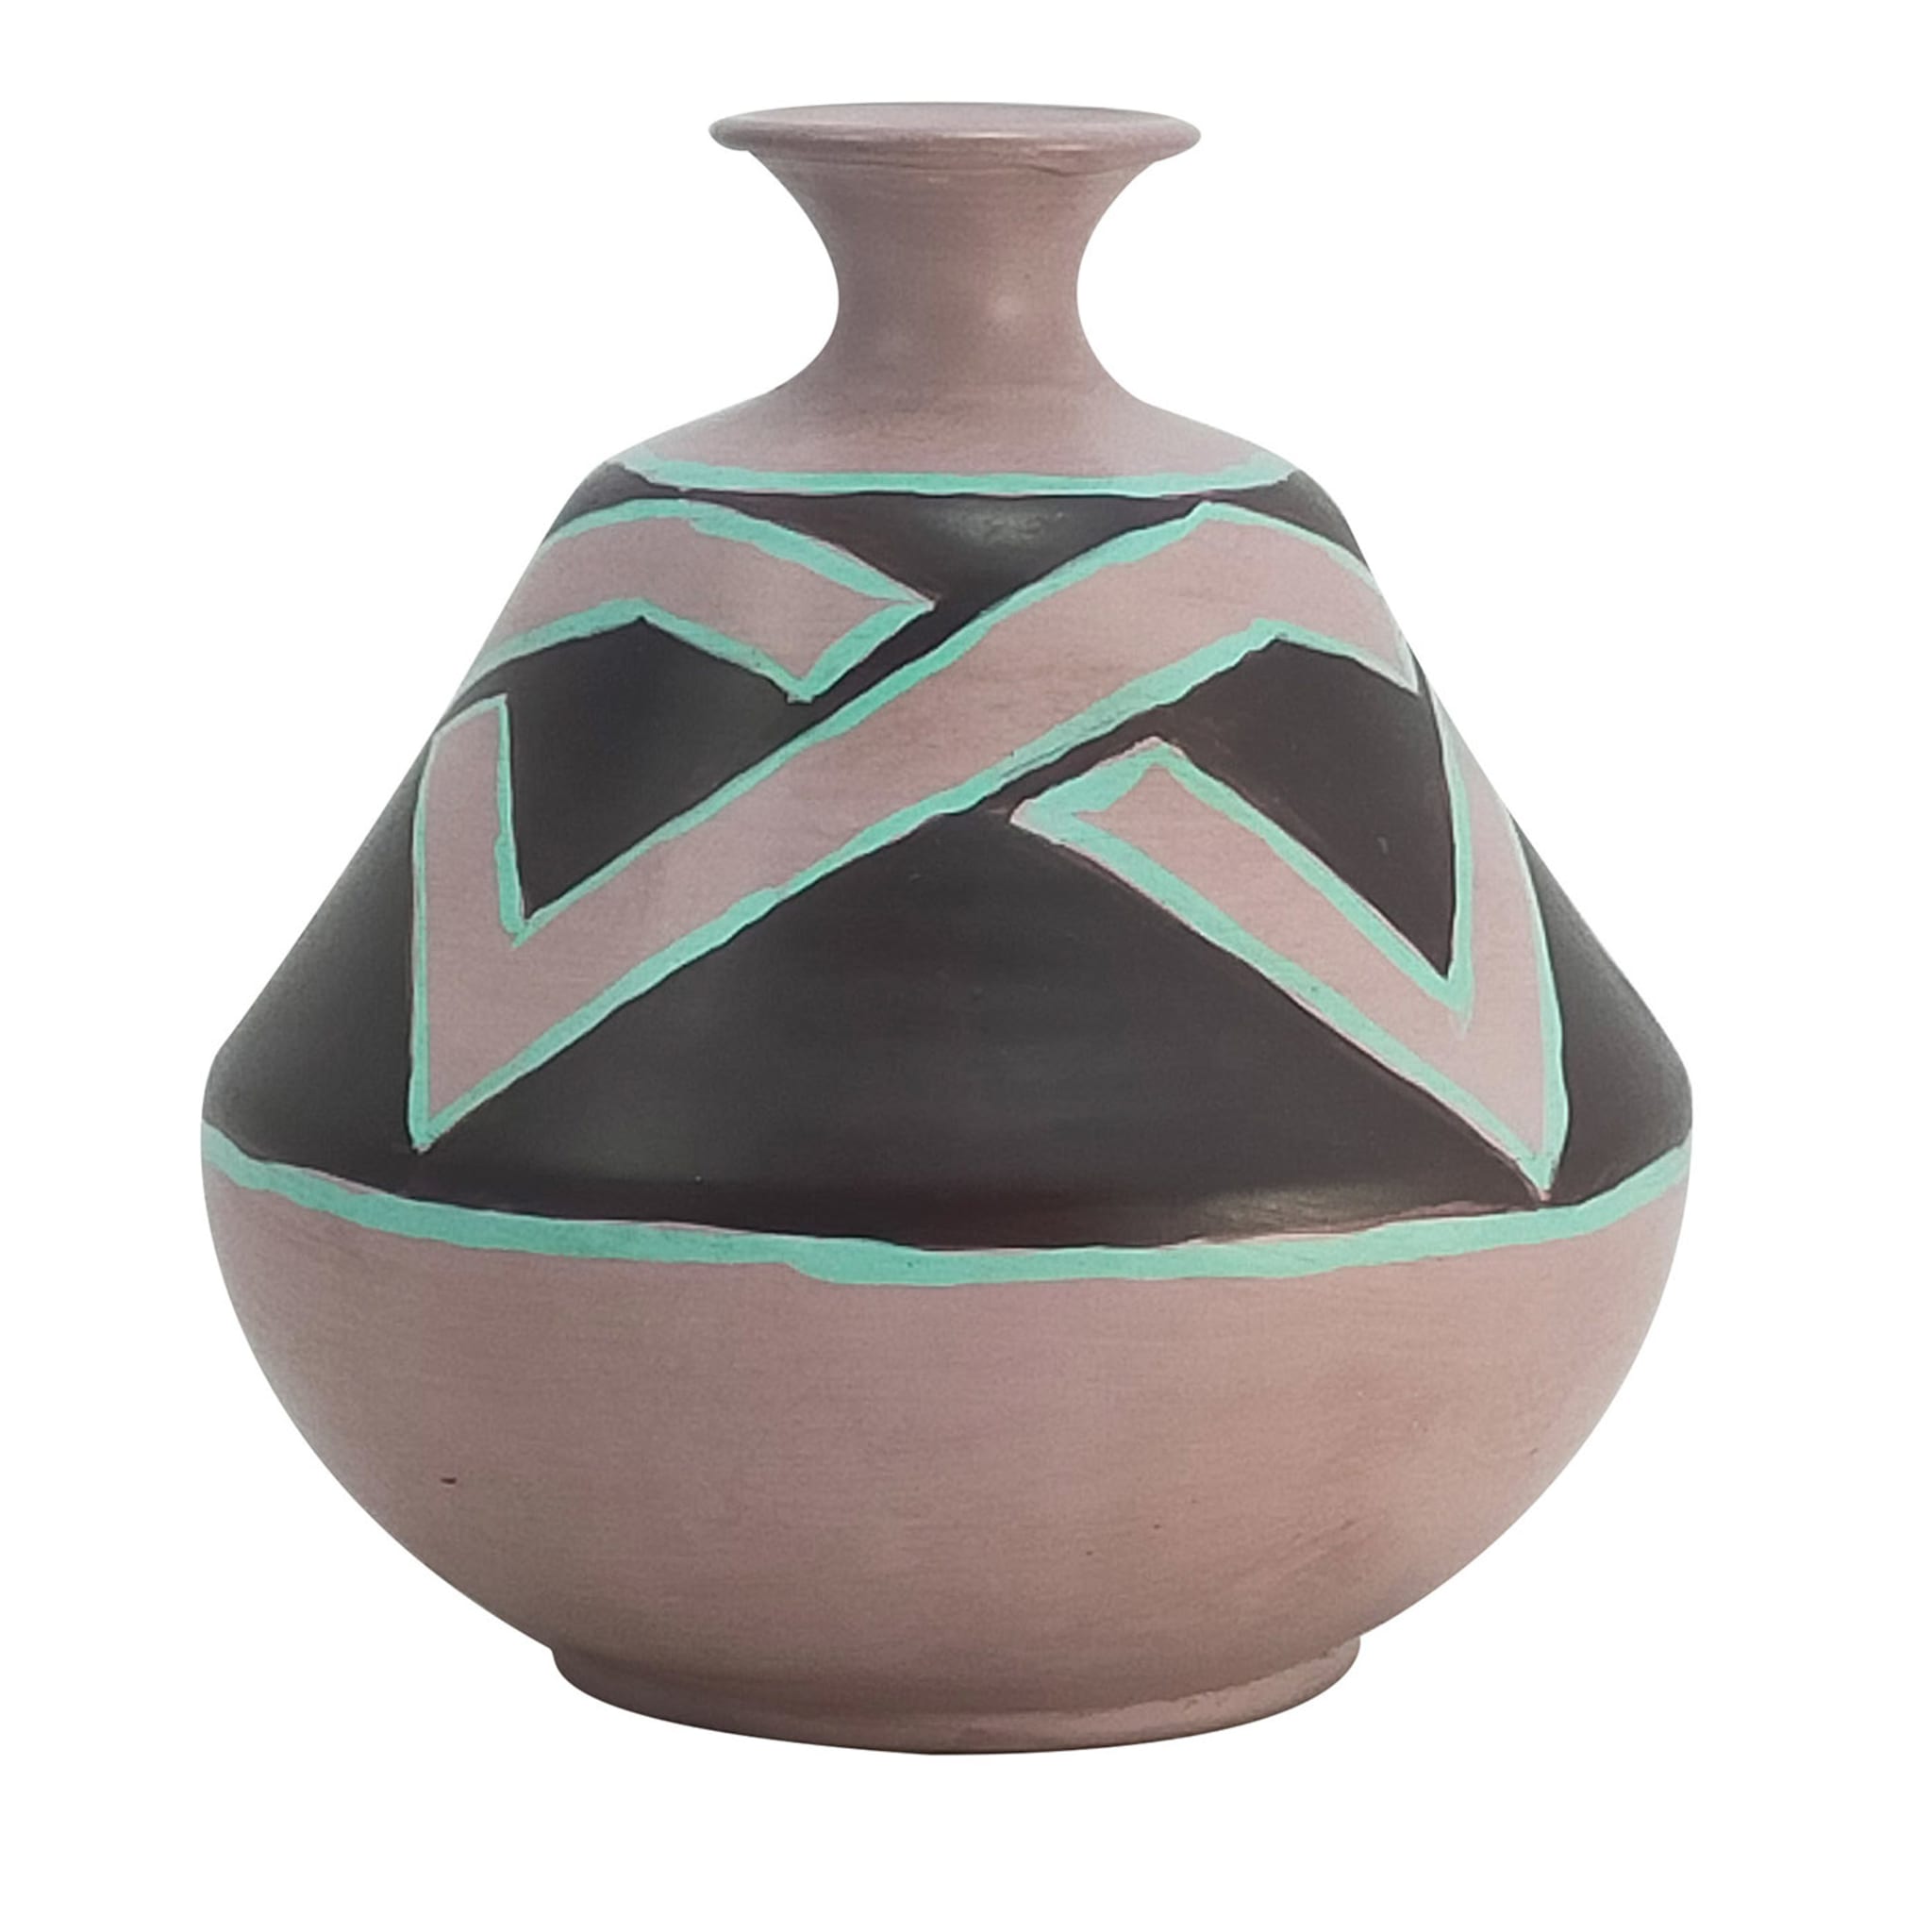 Einstielige Terrakotta-Vase in Taupe/Schwarz/Türkis - Hauptansicht